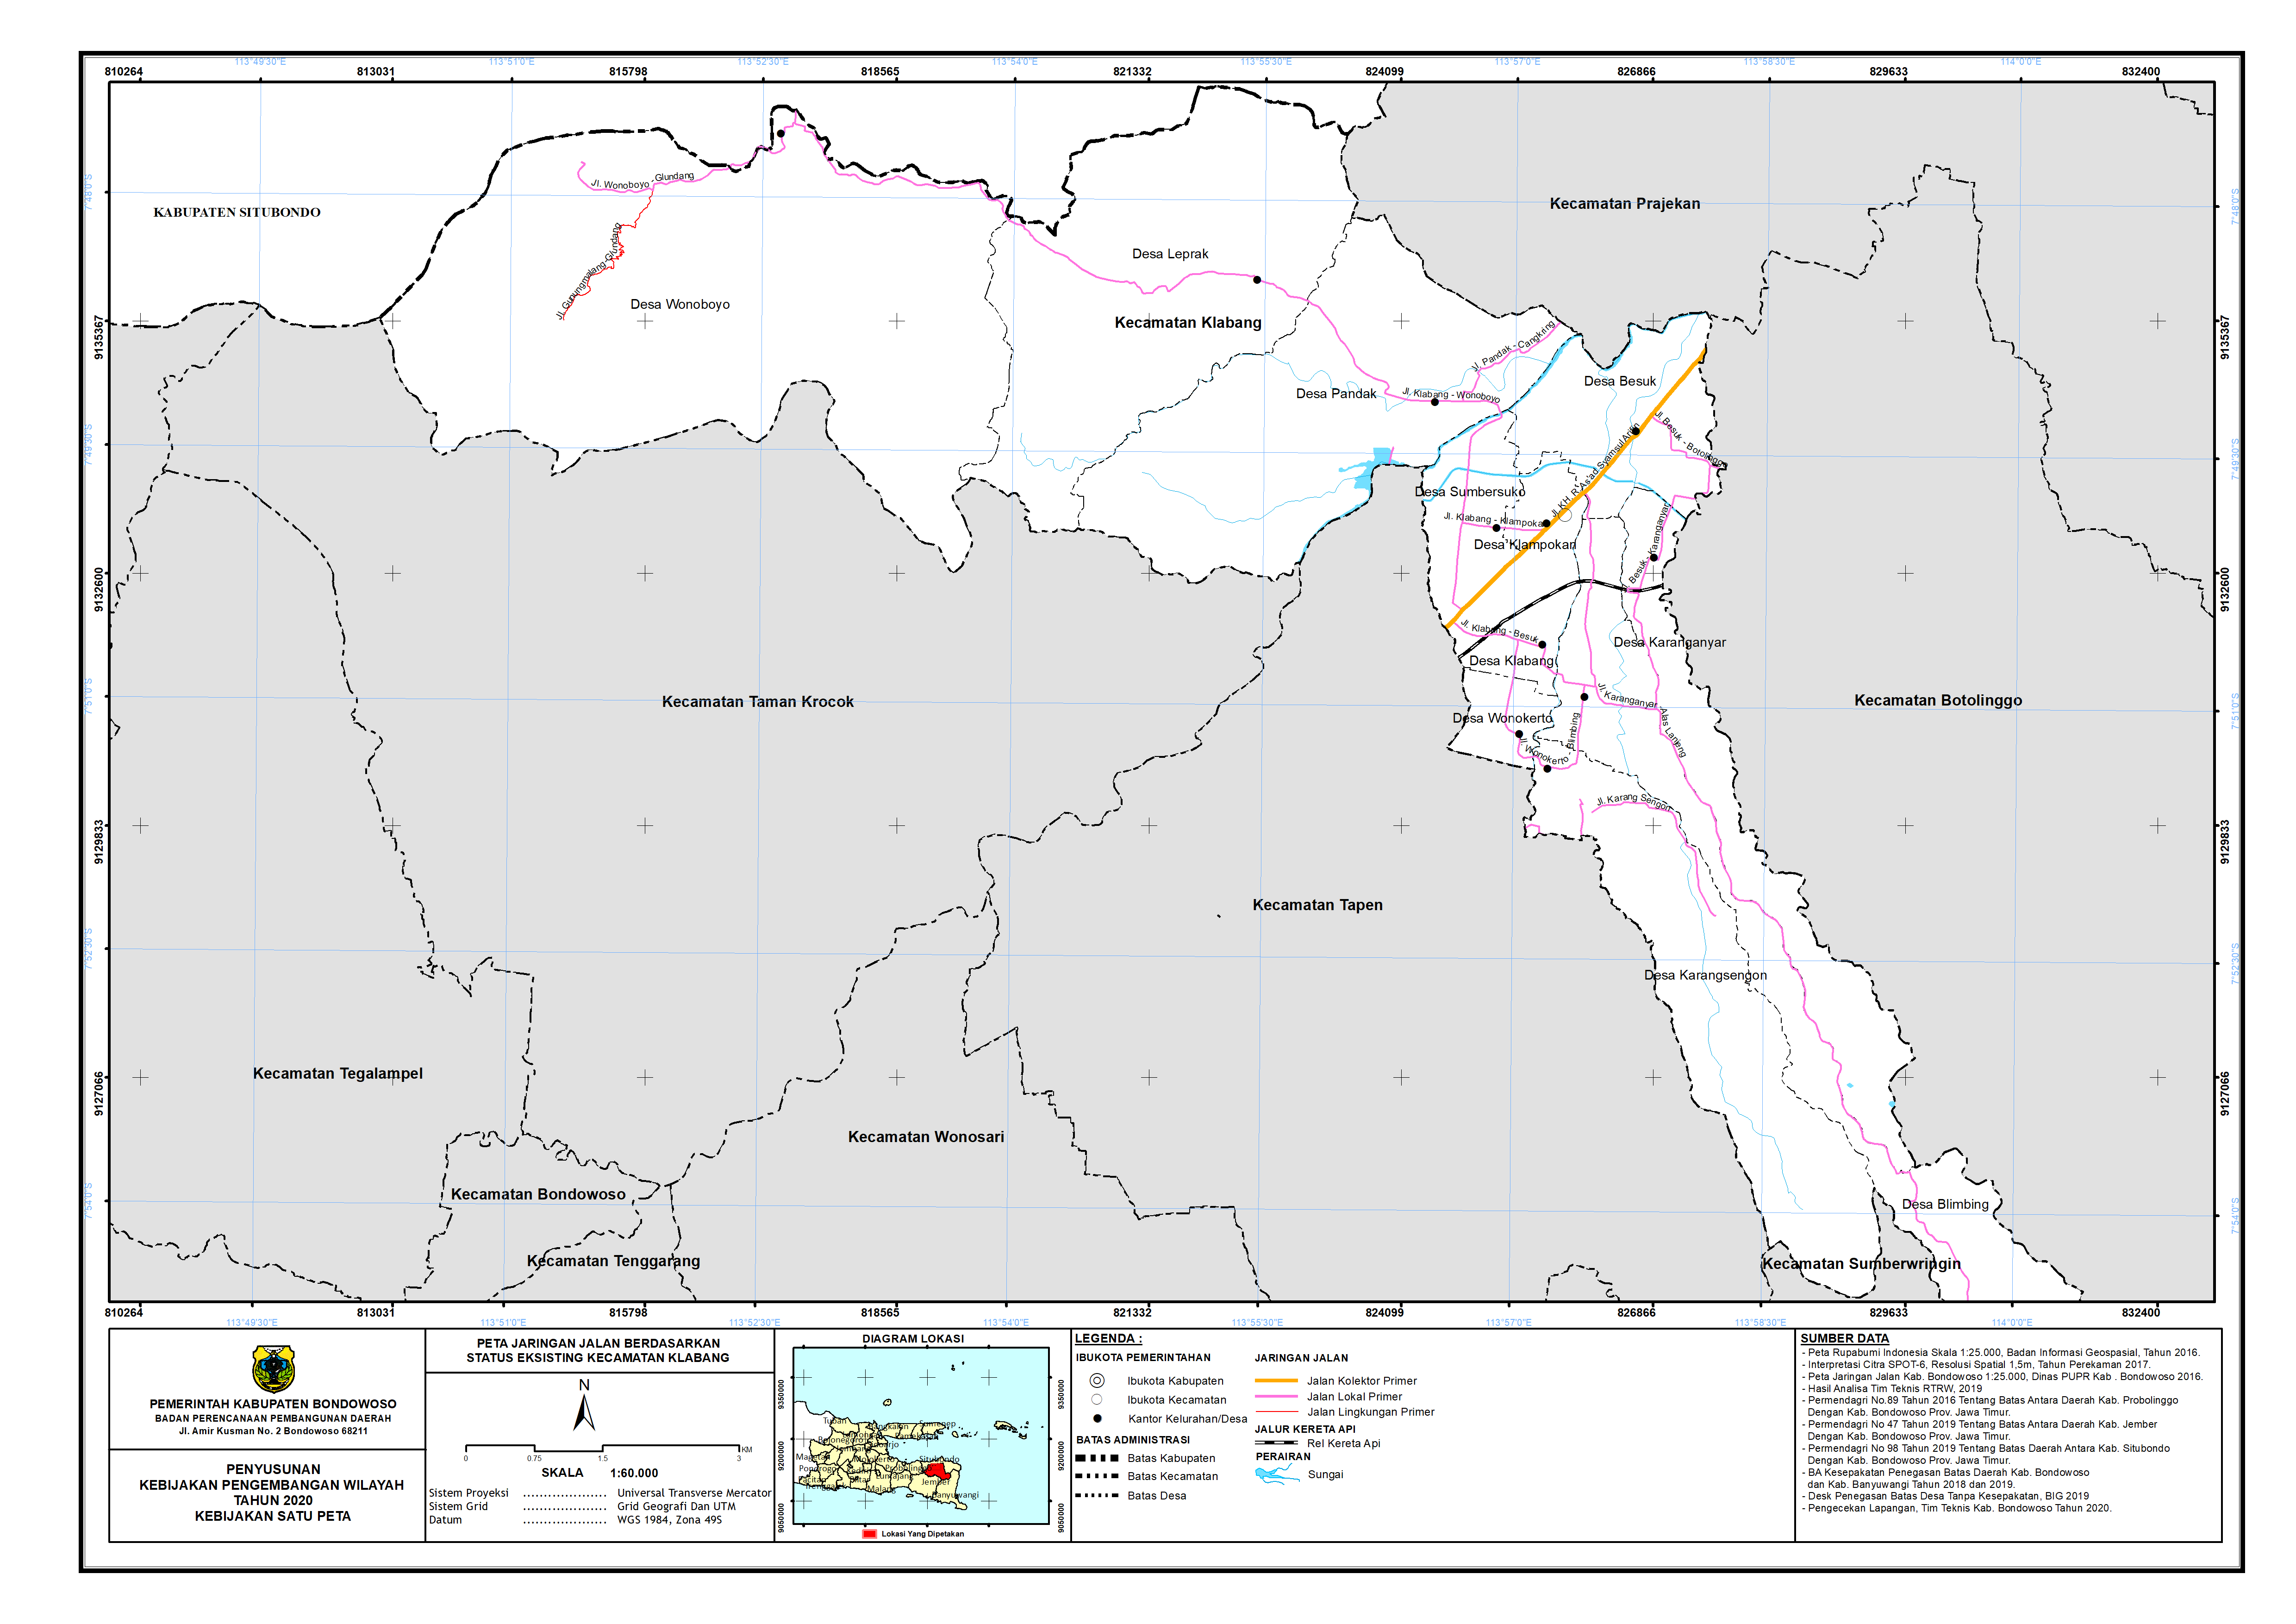 Peta Jaringan Jalan Berdasarkan Status Eksisting Kecamatan Klabang.png